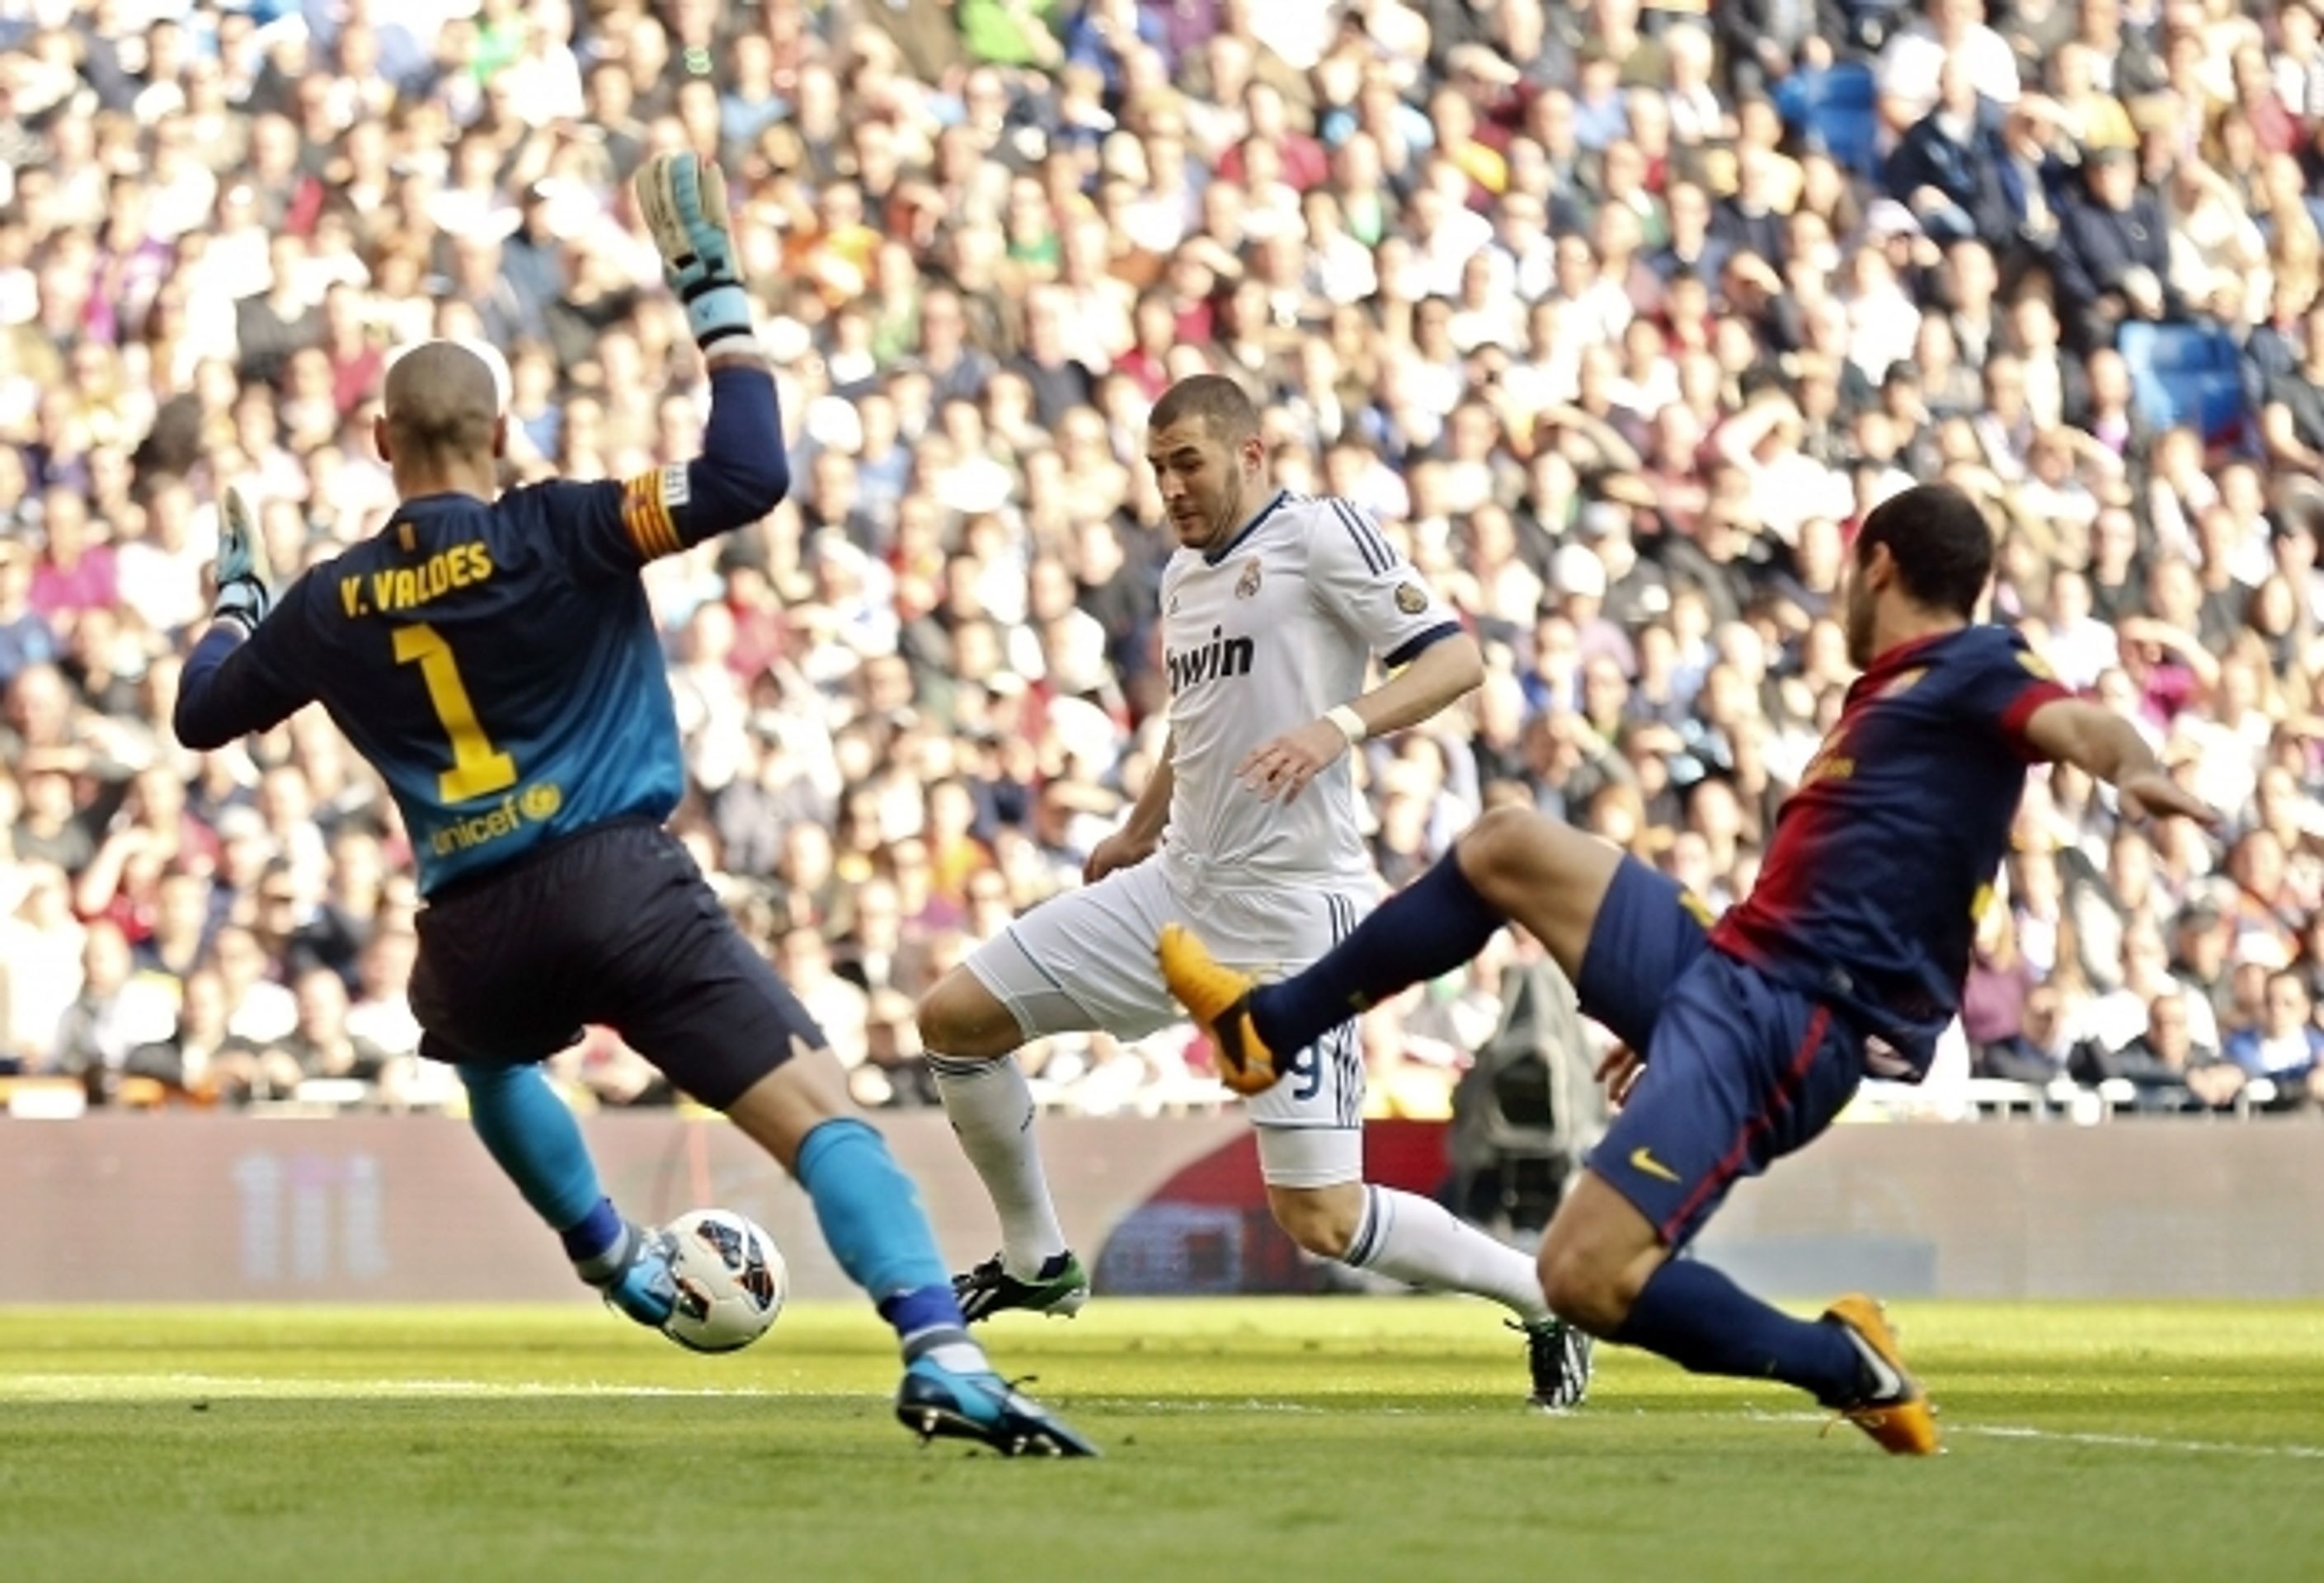 Valdés neunesl prohru Barcelony - 5 - GALERIE: Valdés neunesl prohru Barcelony a viděl červenou (8/8)